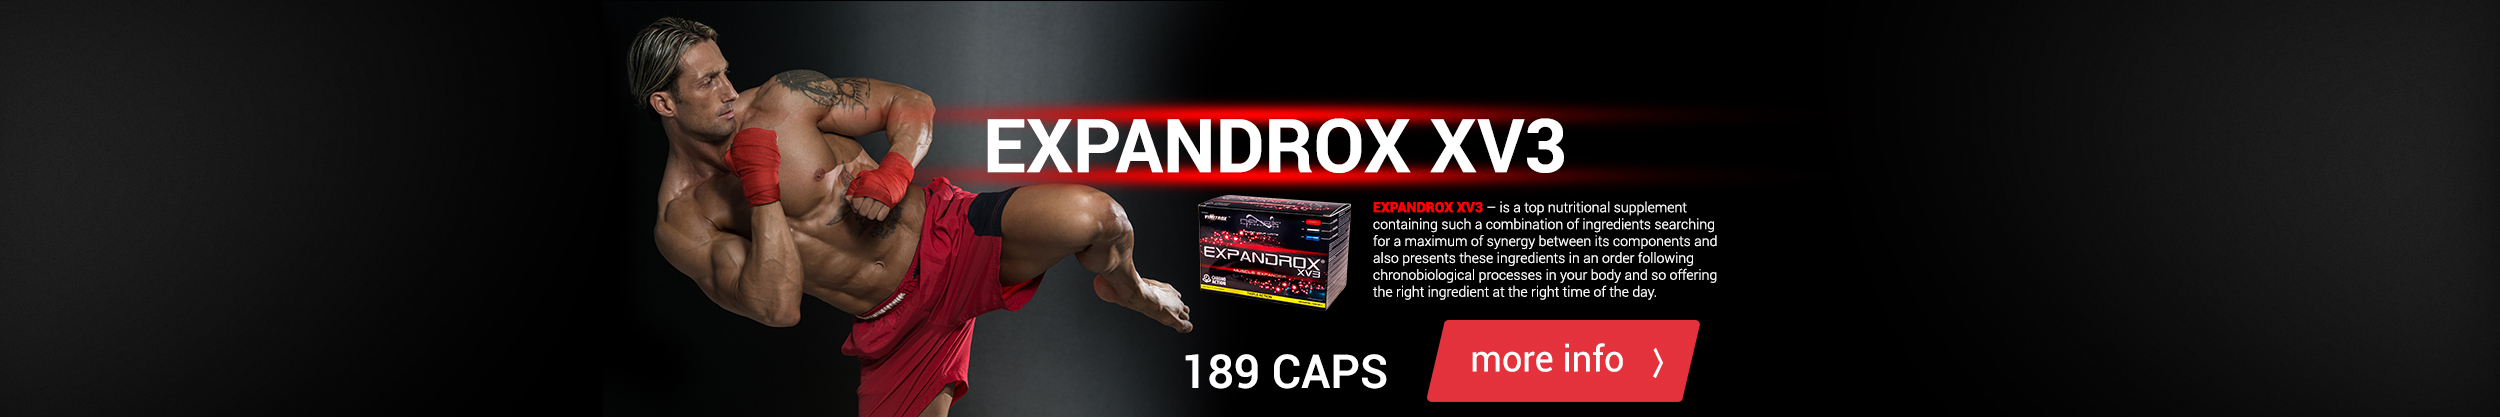 Expandrox_ENG